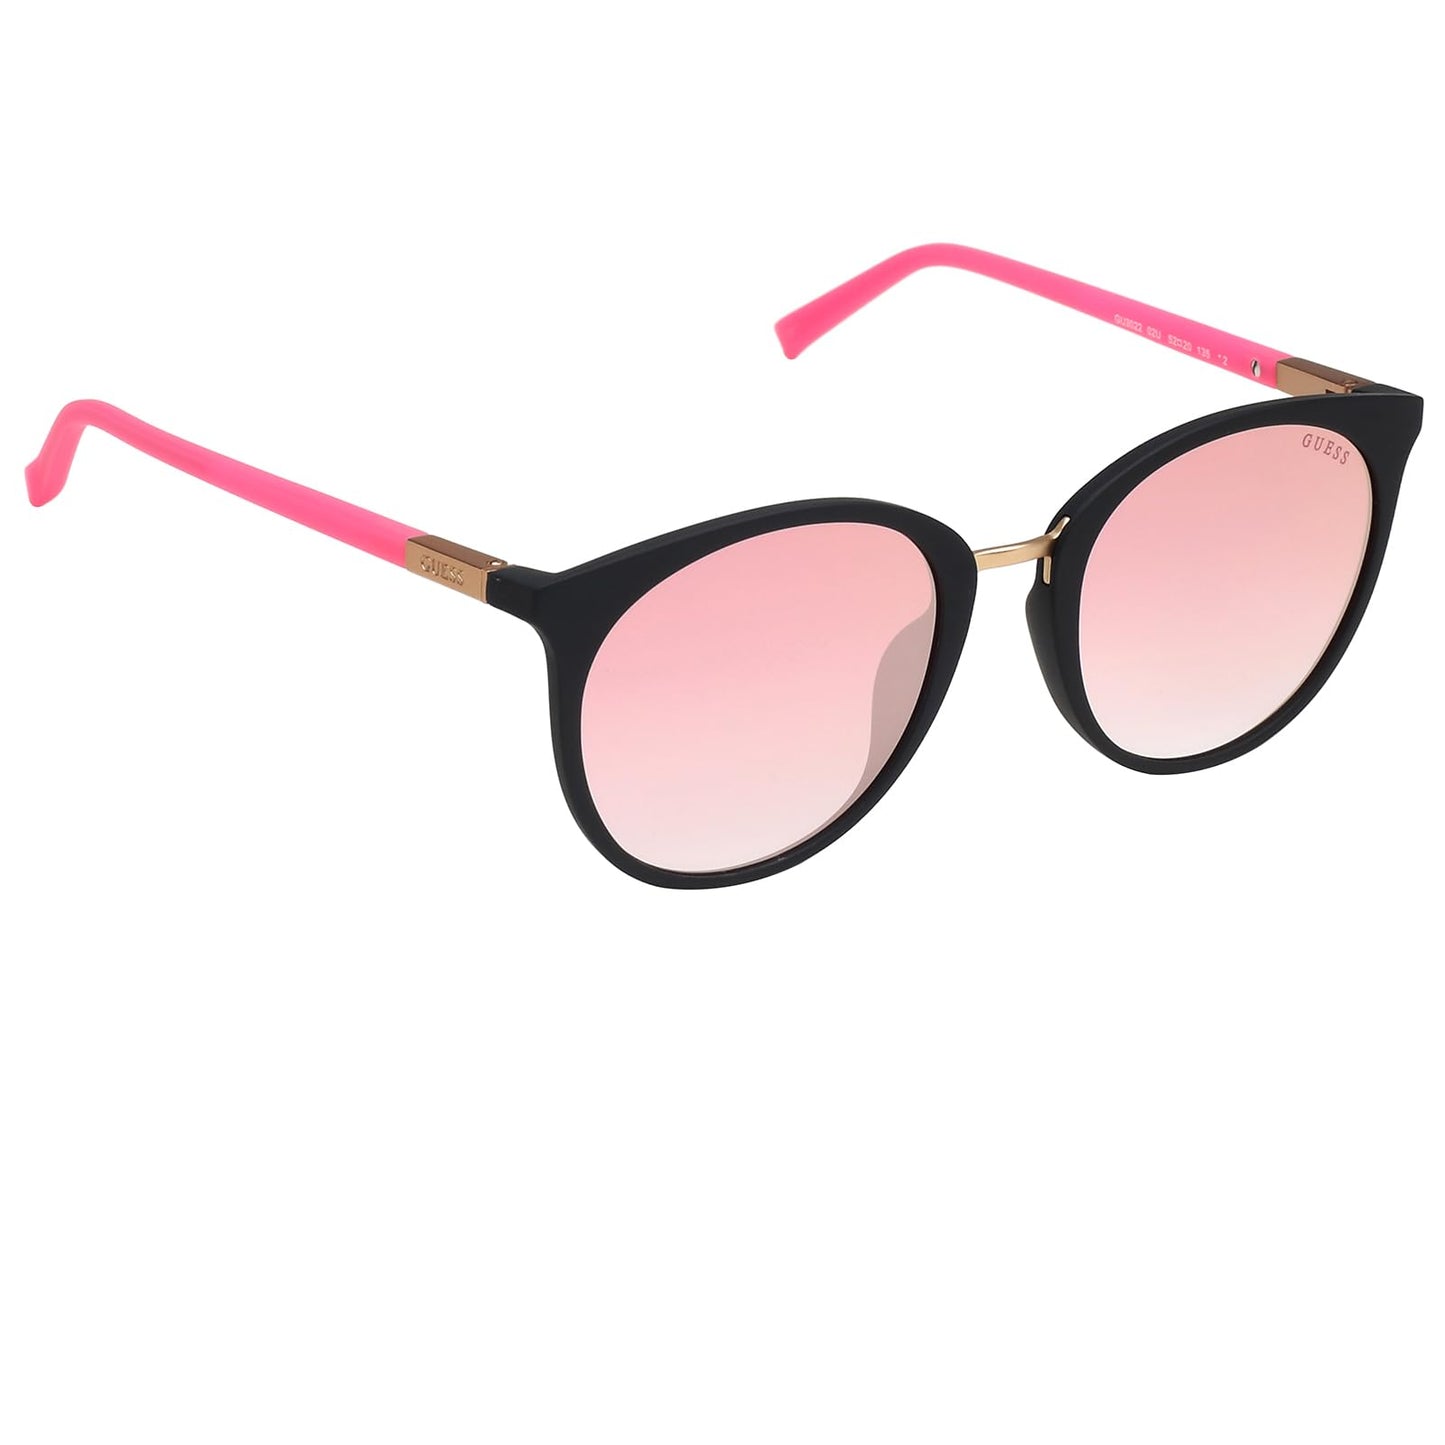 Guess Women's Gu3022 Round Sunglasses, Matte Black & Bordeaux Mirror, 52 mm